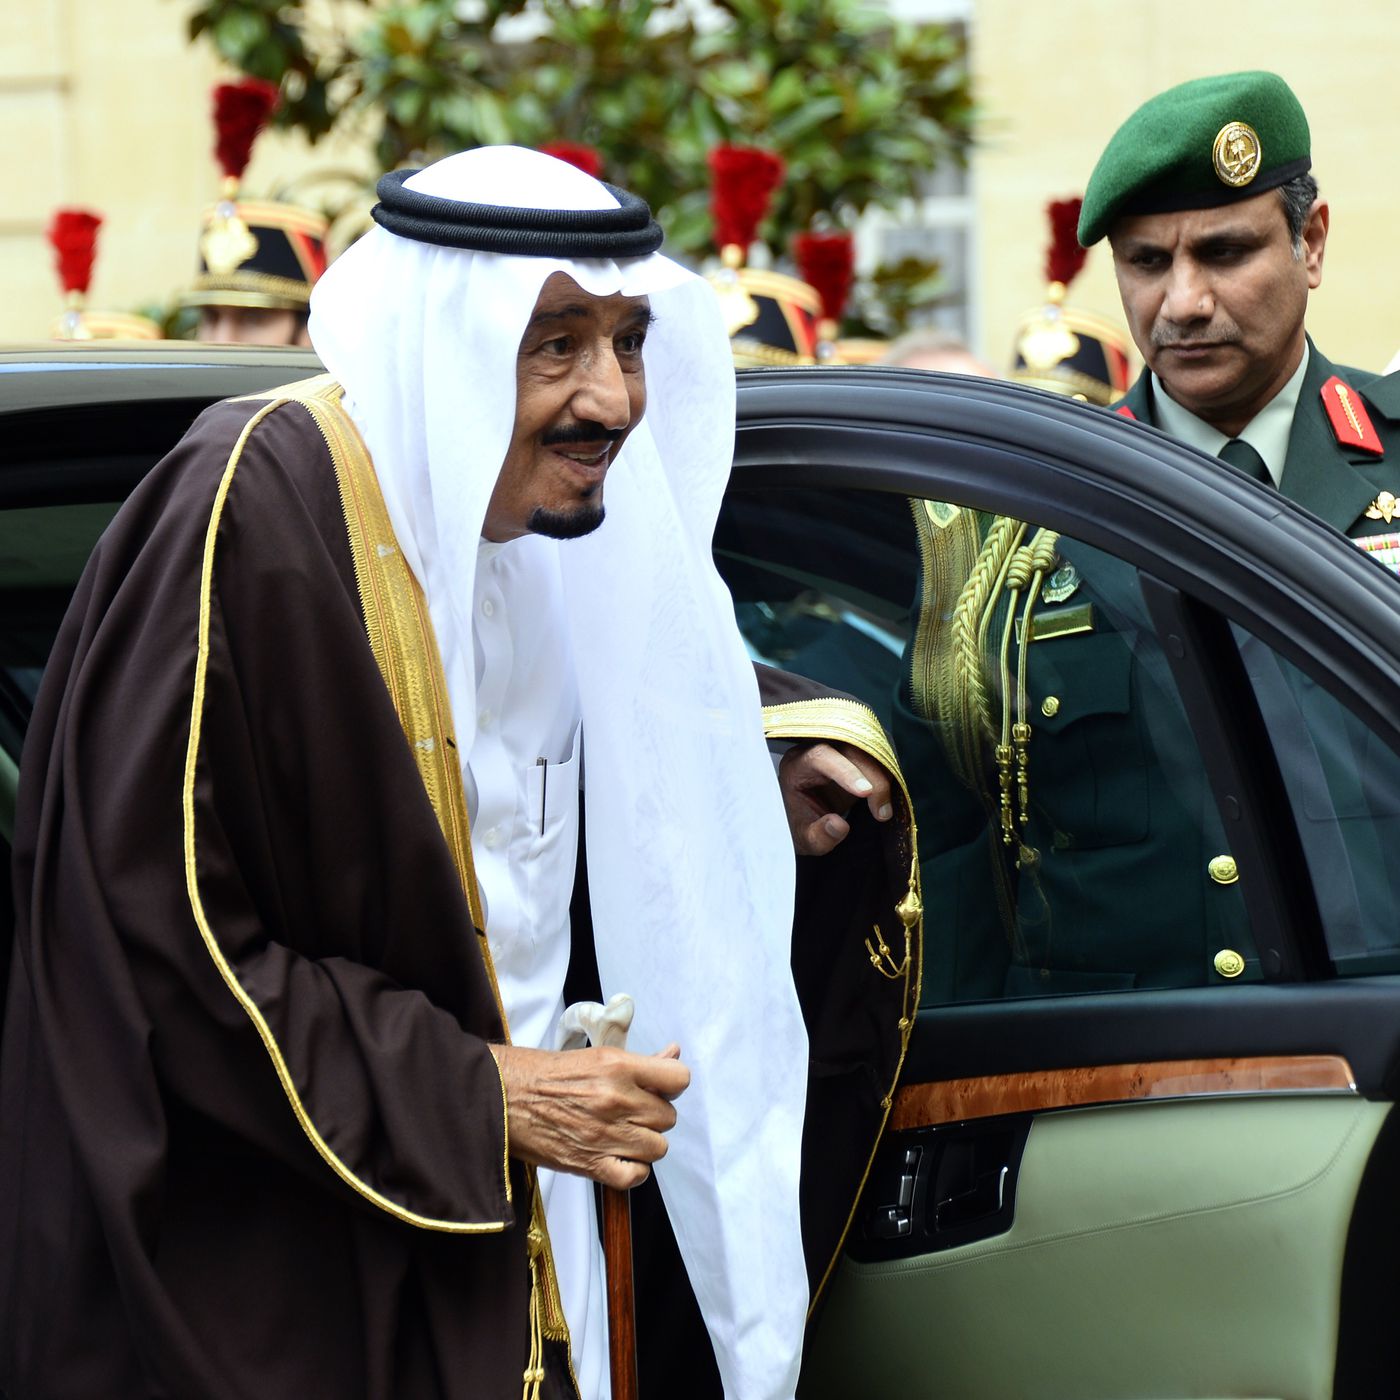 “بالصور” السيارات التي يفضّلها الملك سلمان بن عبد العزيز آل سعود